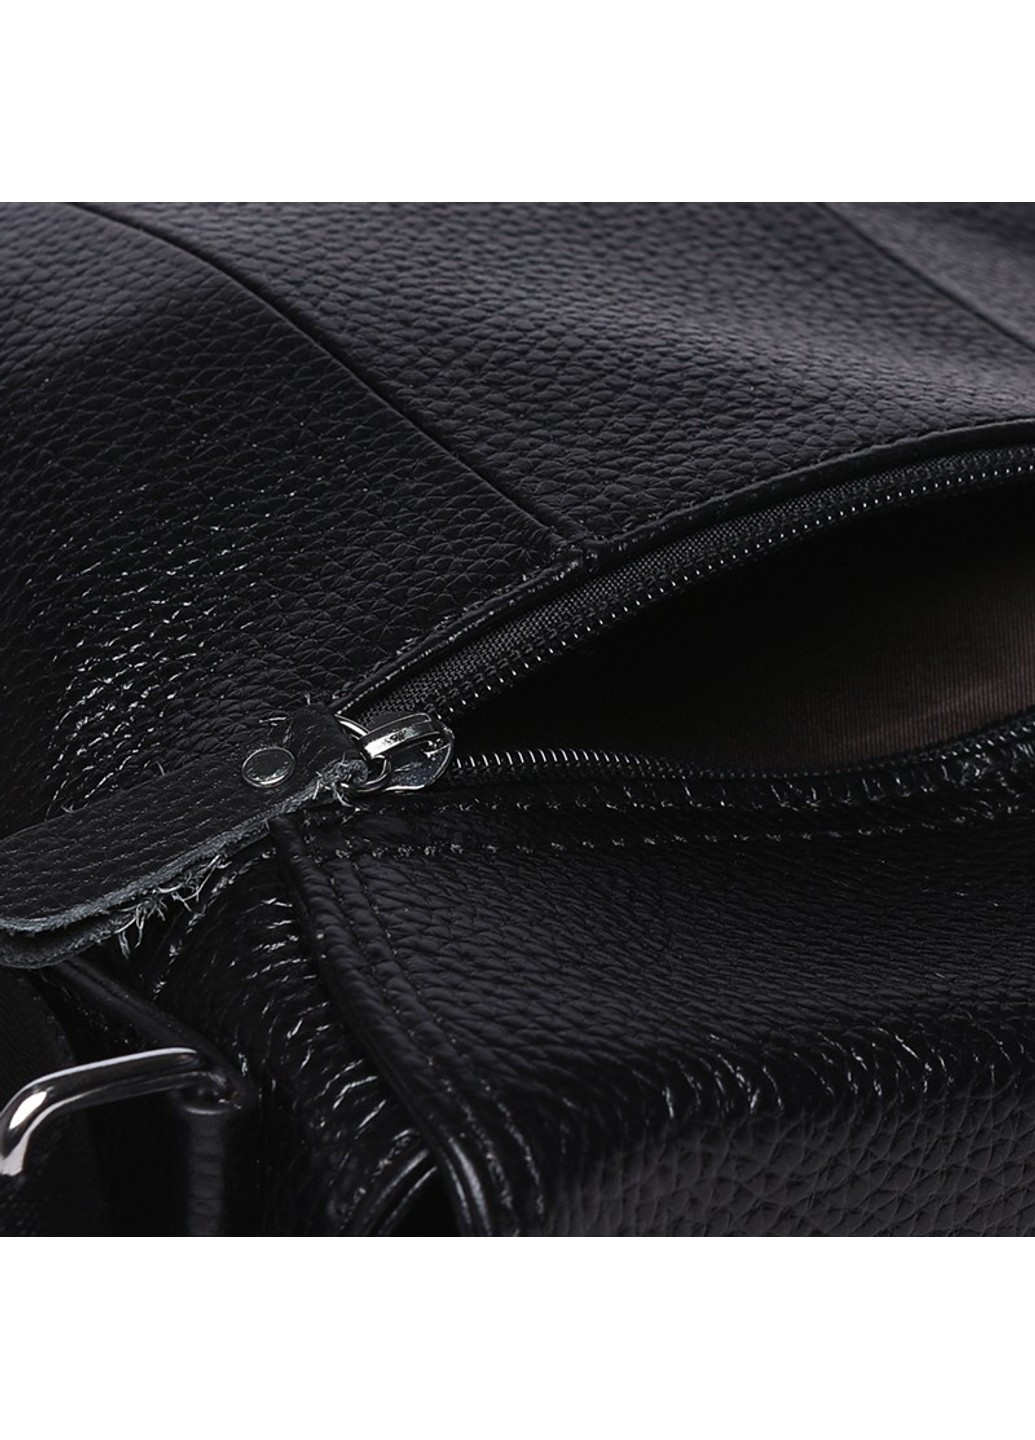 Чоловічі шкіряні сумки K13822-black Borsa Leather (266143235)